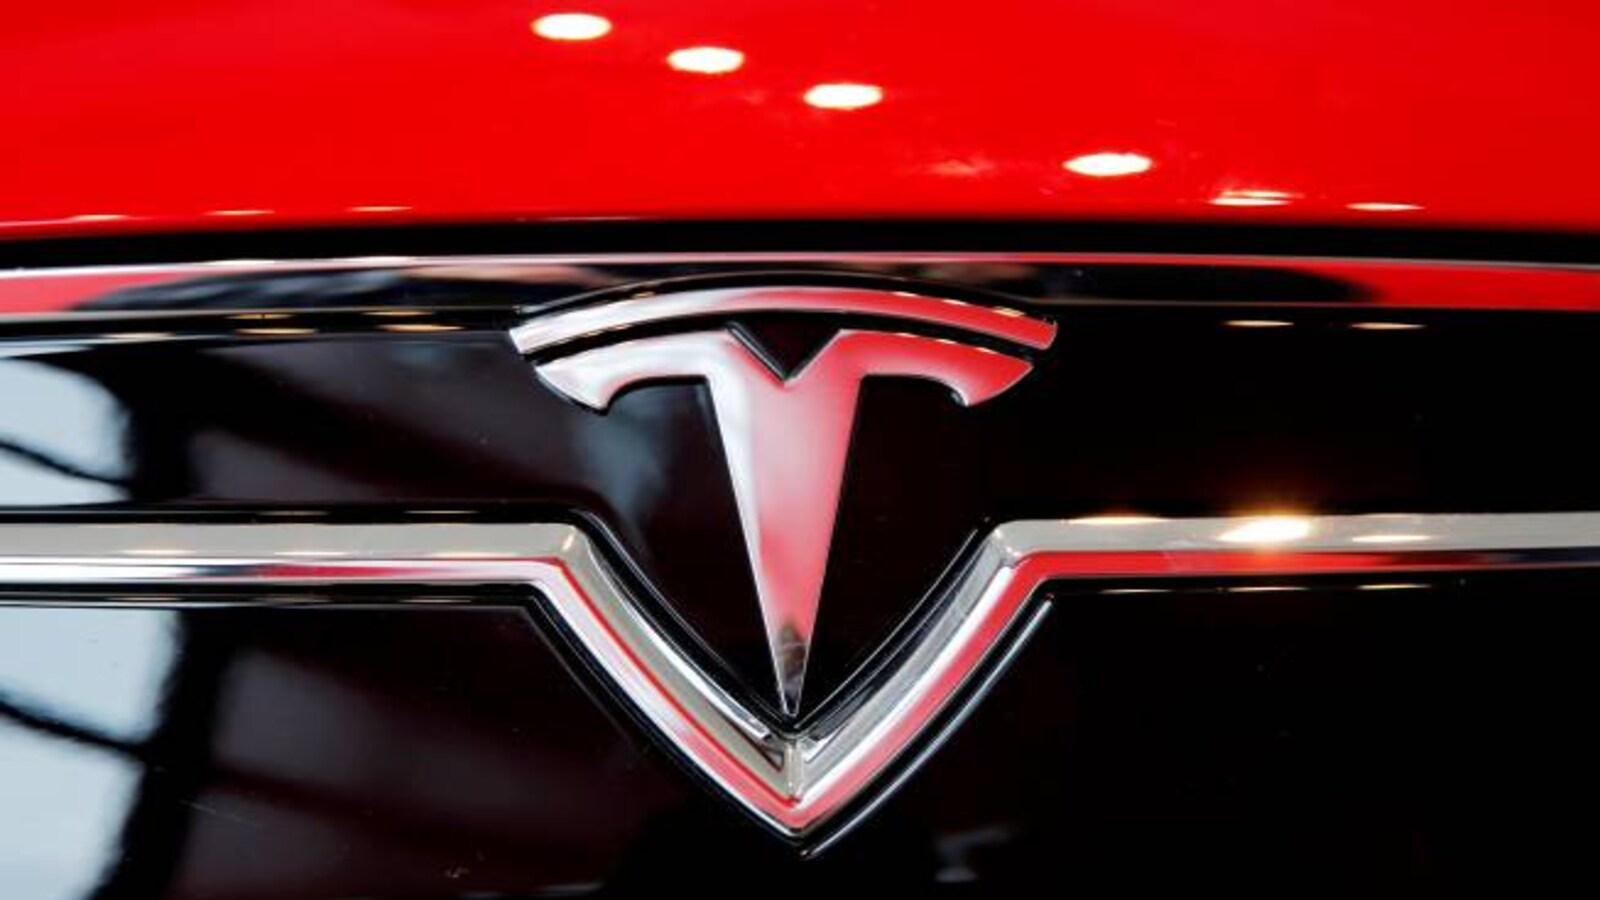 Tesla recalls 120,000 vehicles over doors that could unlock in crash